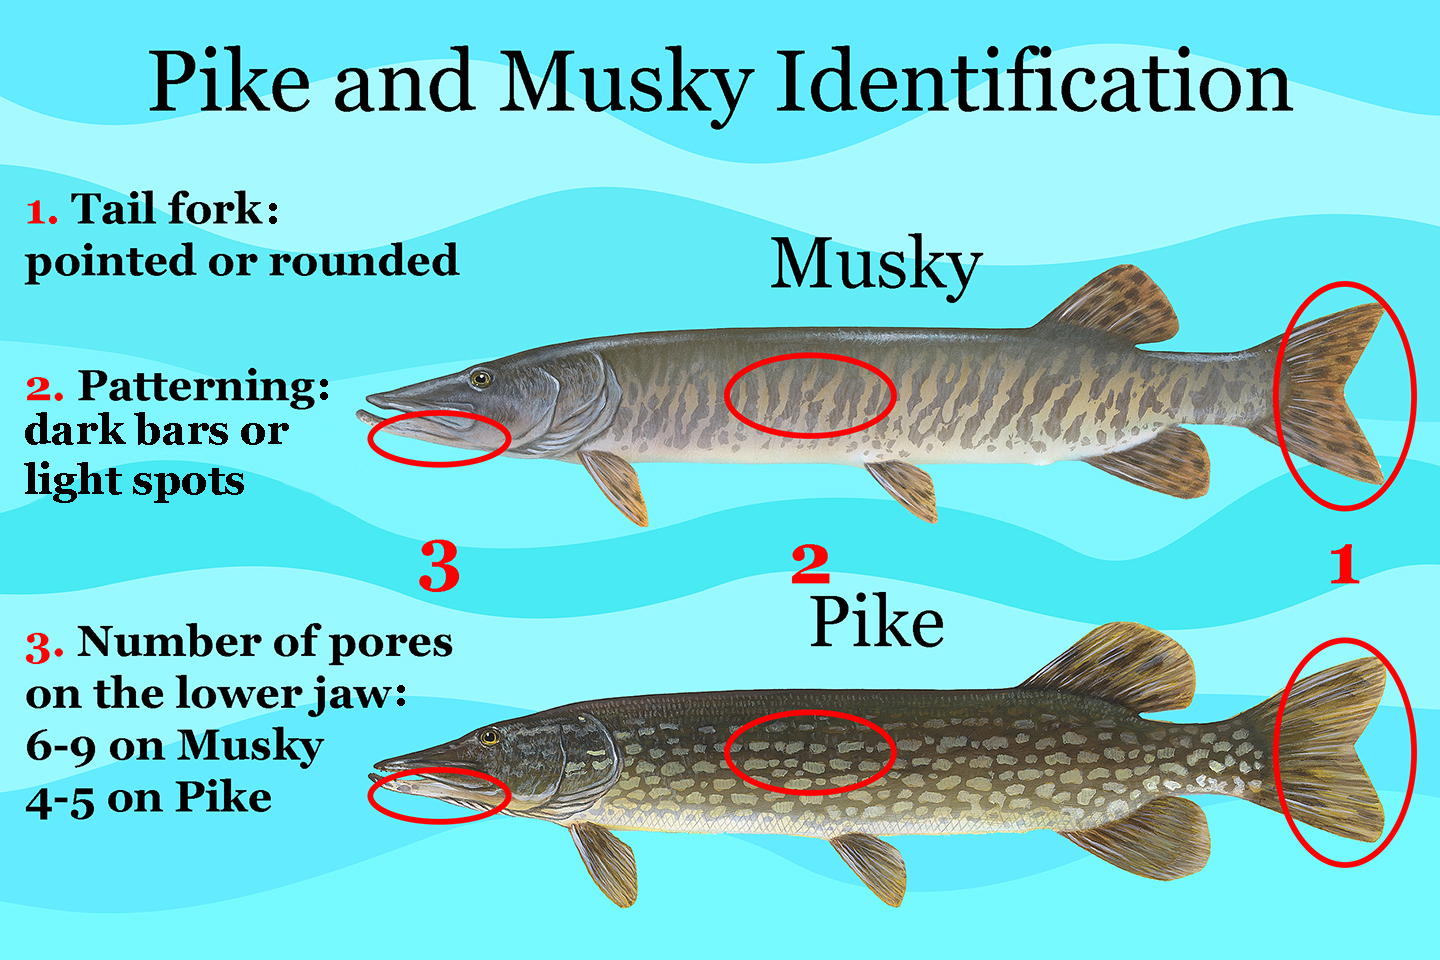 Muskie-vs-Pike-species-identification.jpg